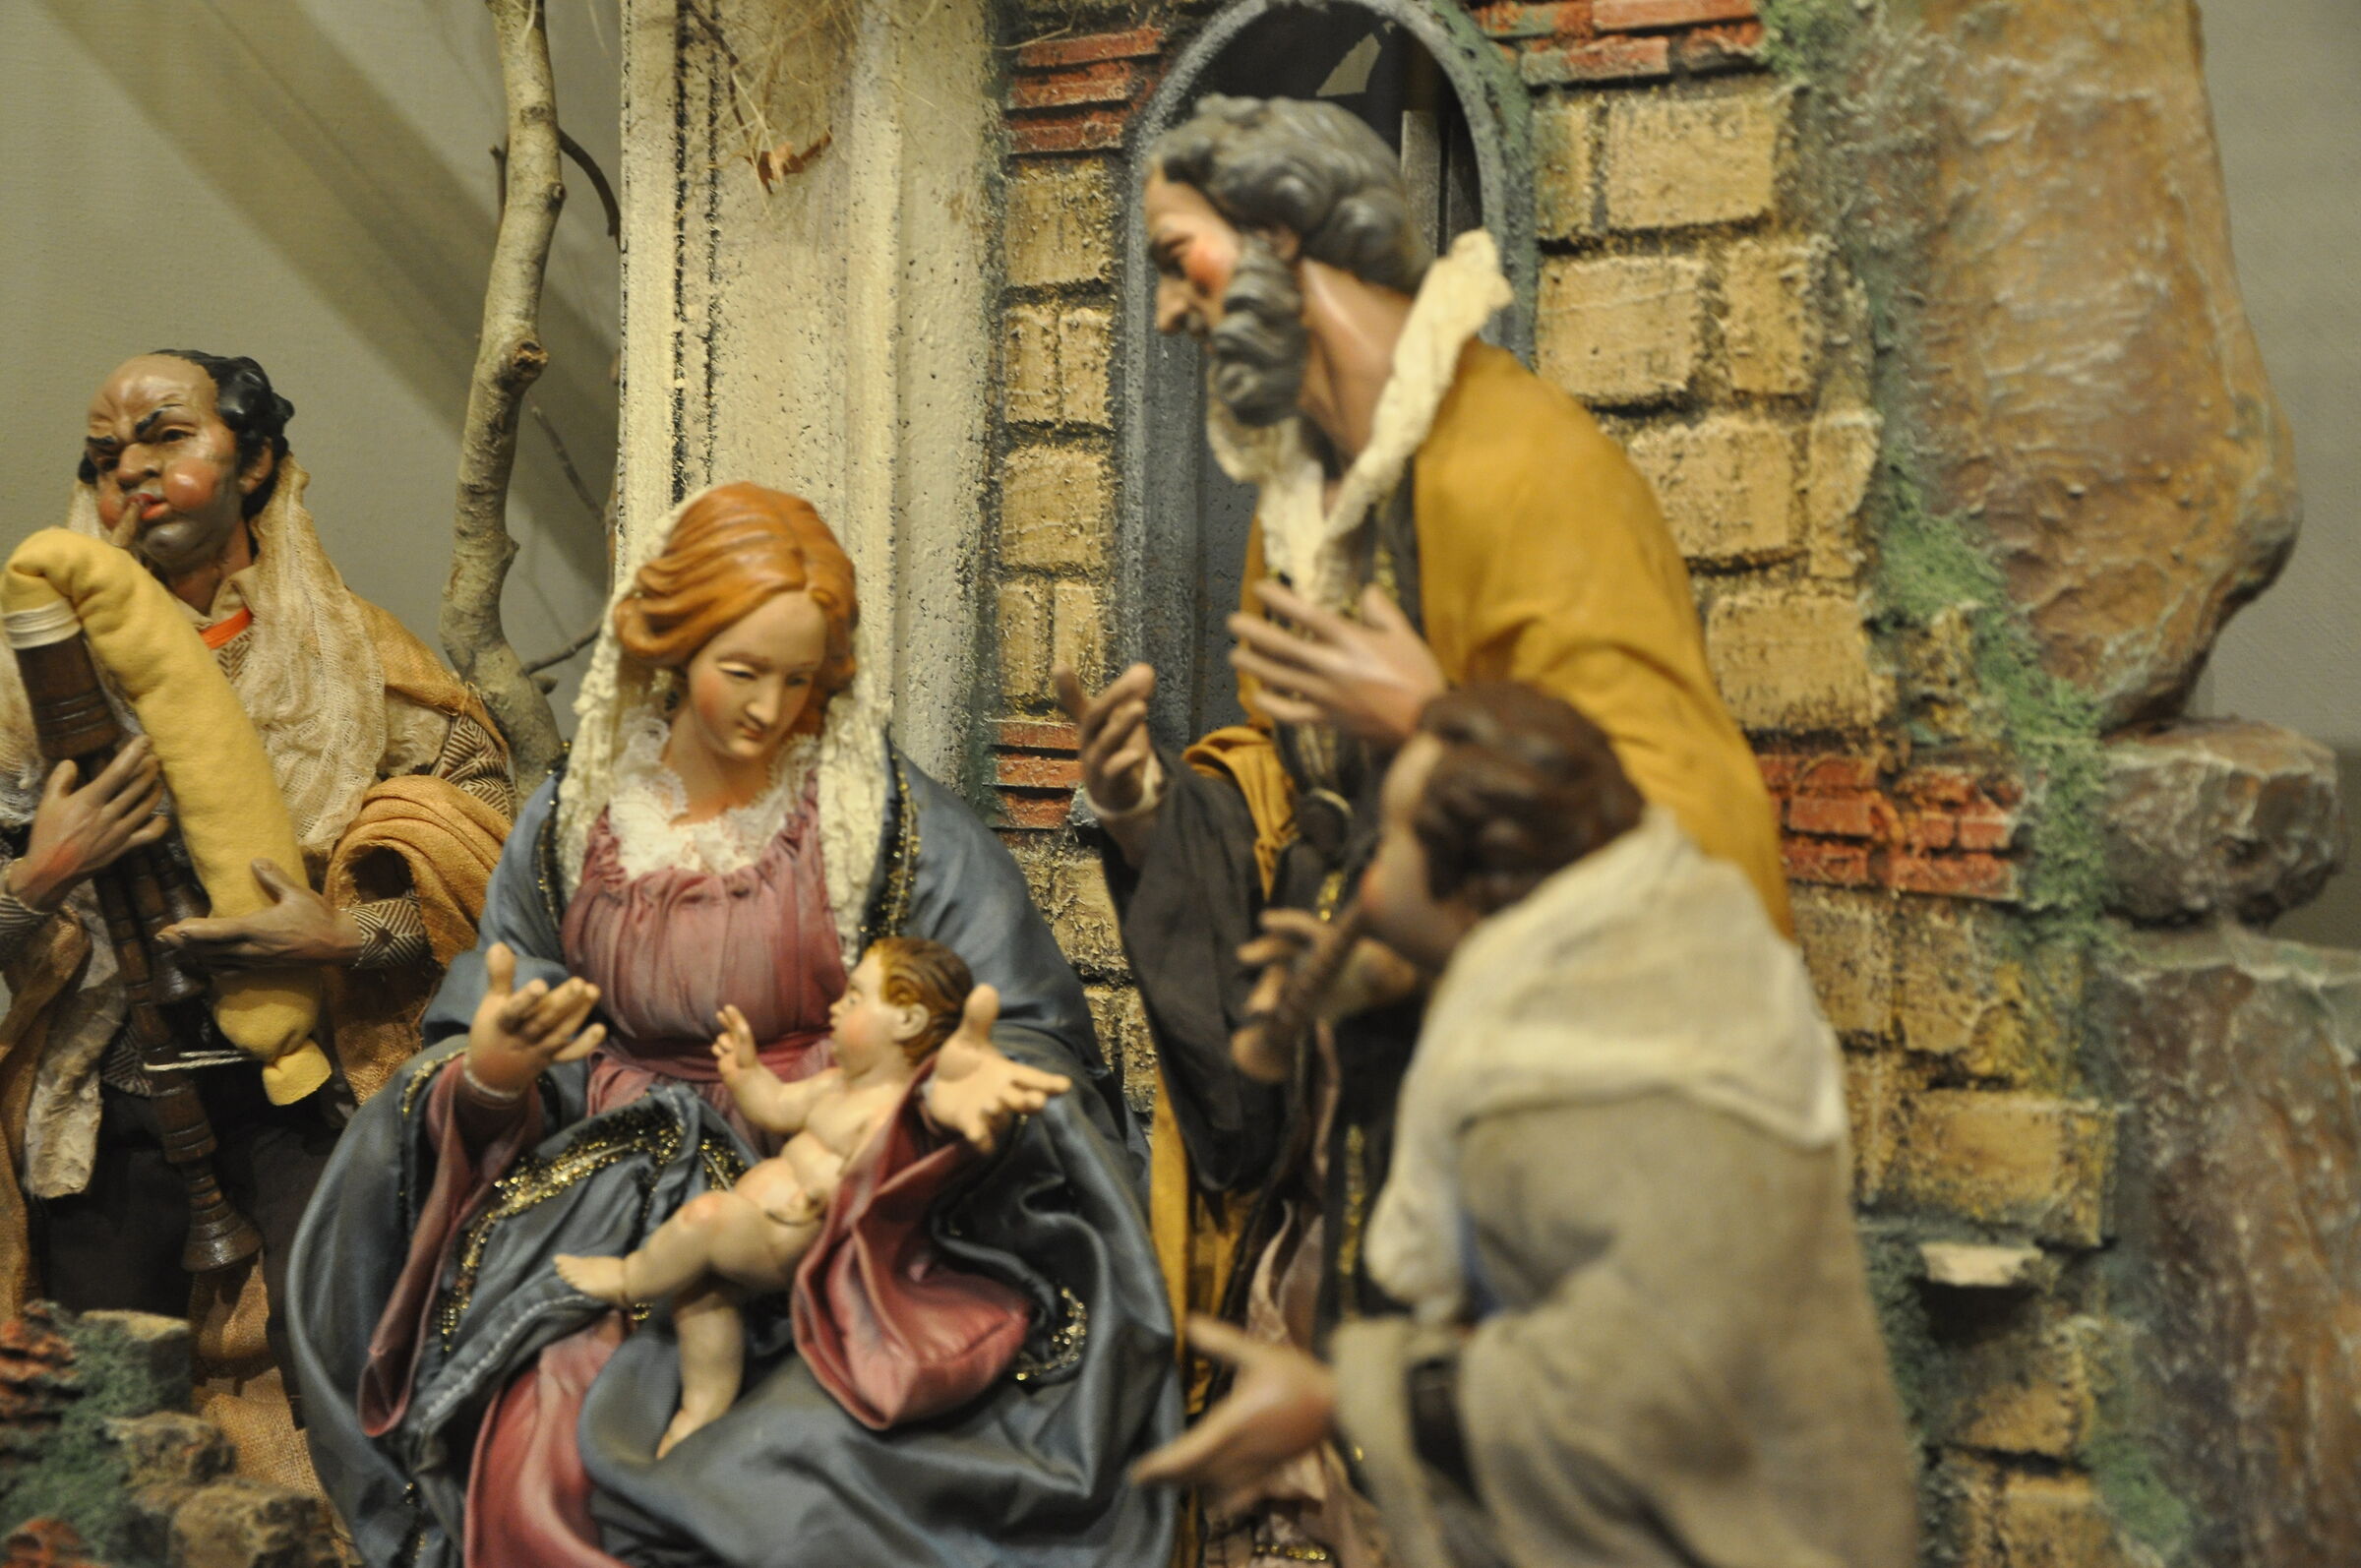 Handmade nativity scenes...